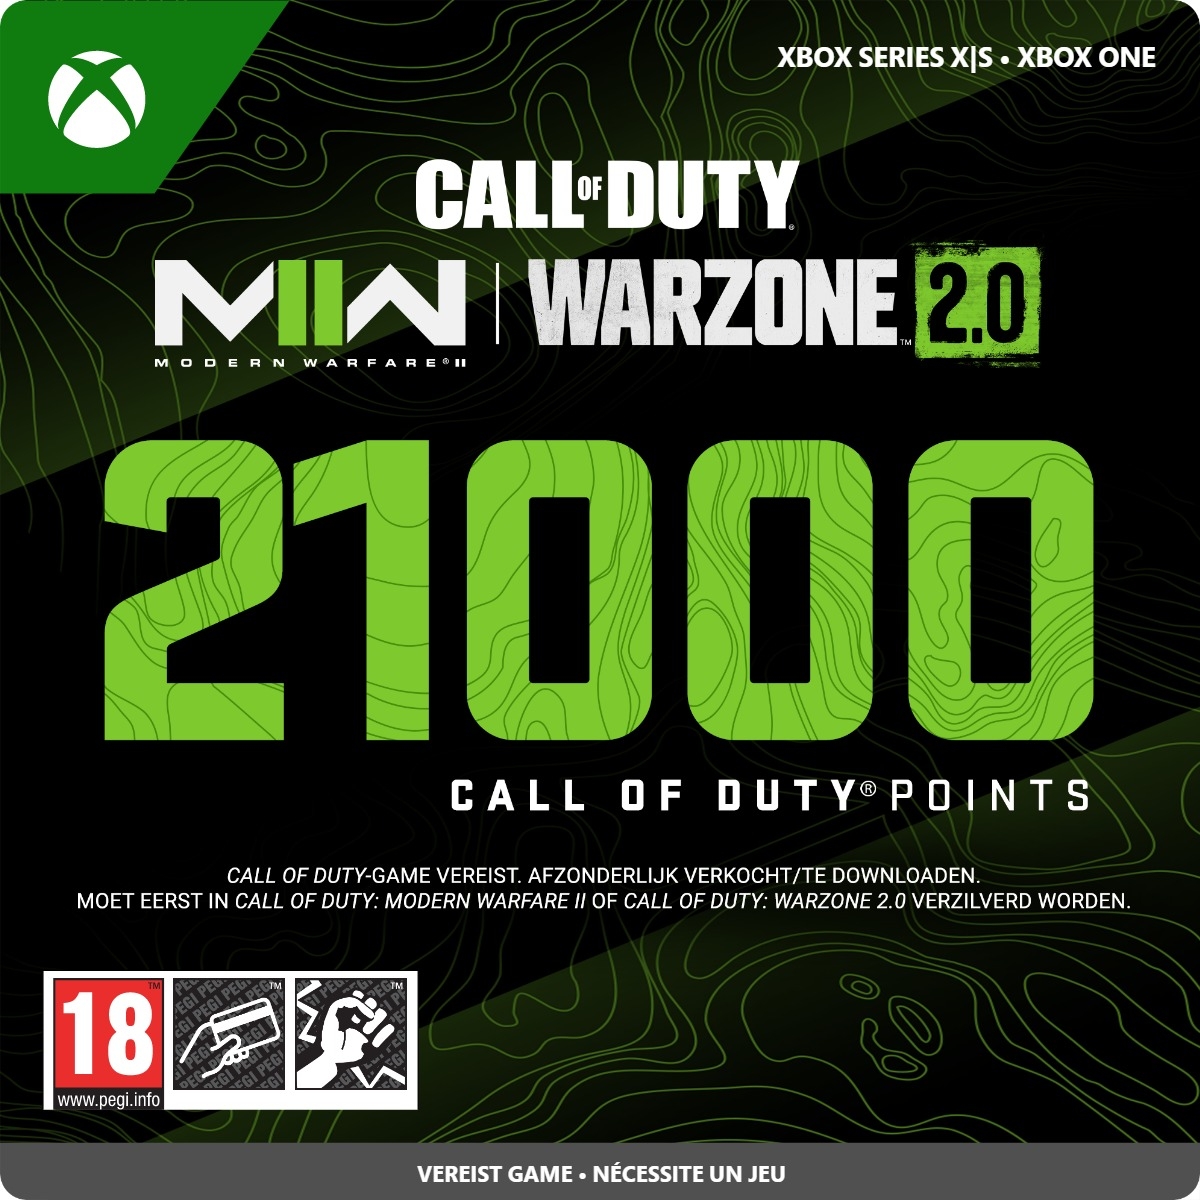 21000 Xbox Call of Duty Points (Direct Digitaal Geleverd) XboxLiveKaarten.nl